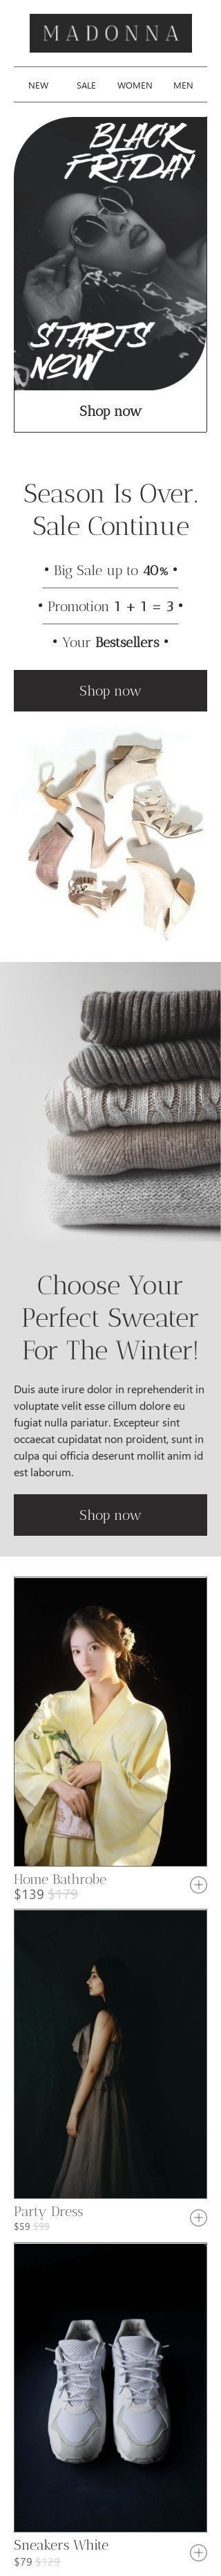 Plantilla de correo electrónico «Elige tu suéter perfecto» de Viernes Negro para la industria de Moda Vista de móvil